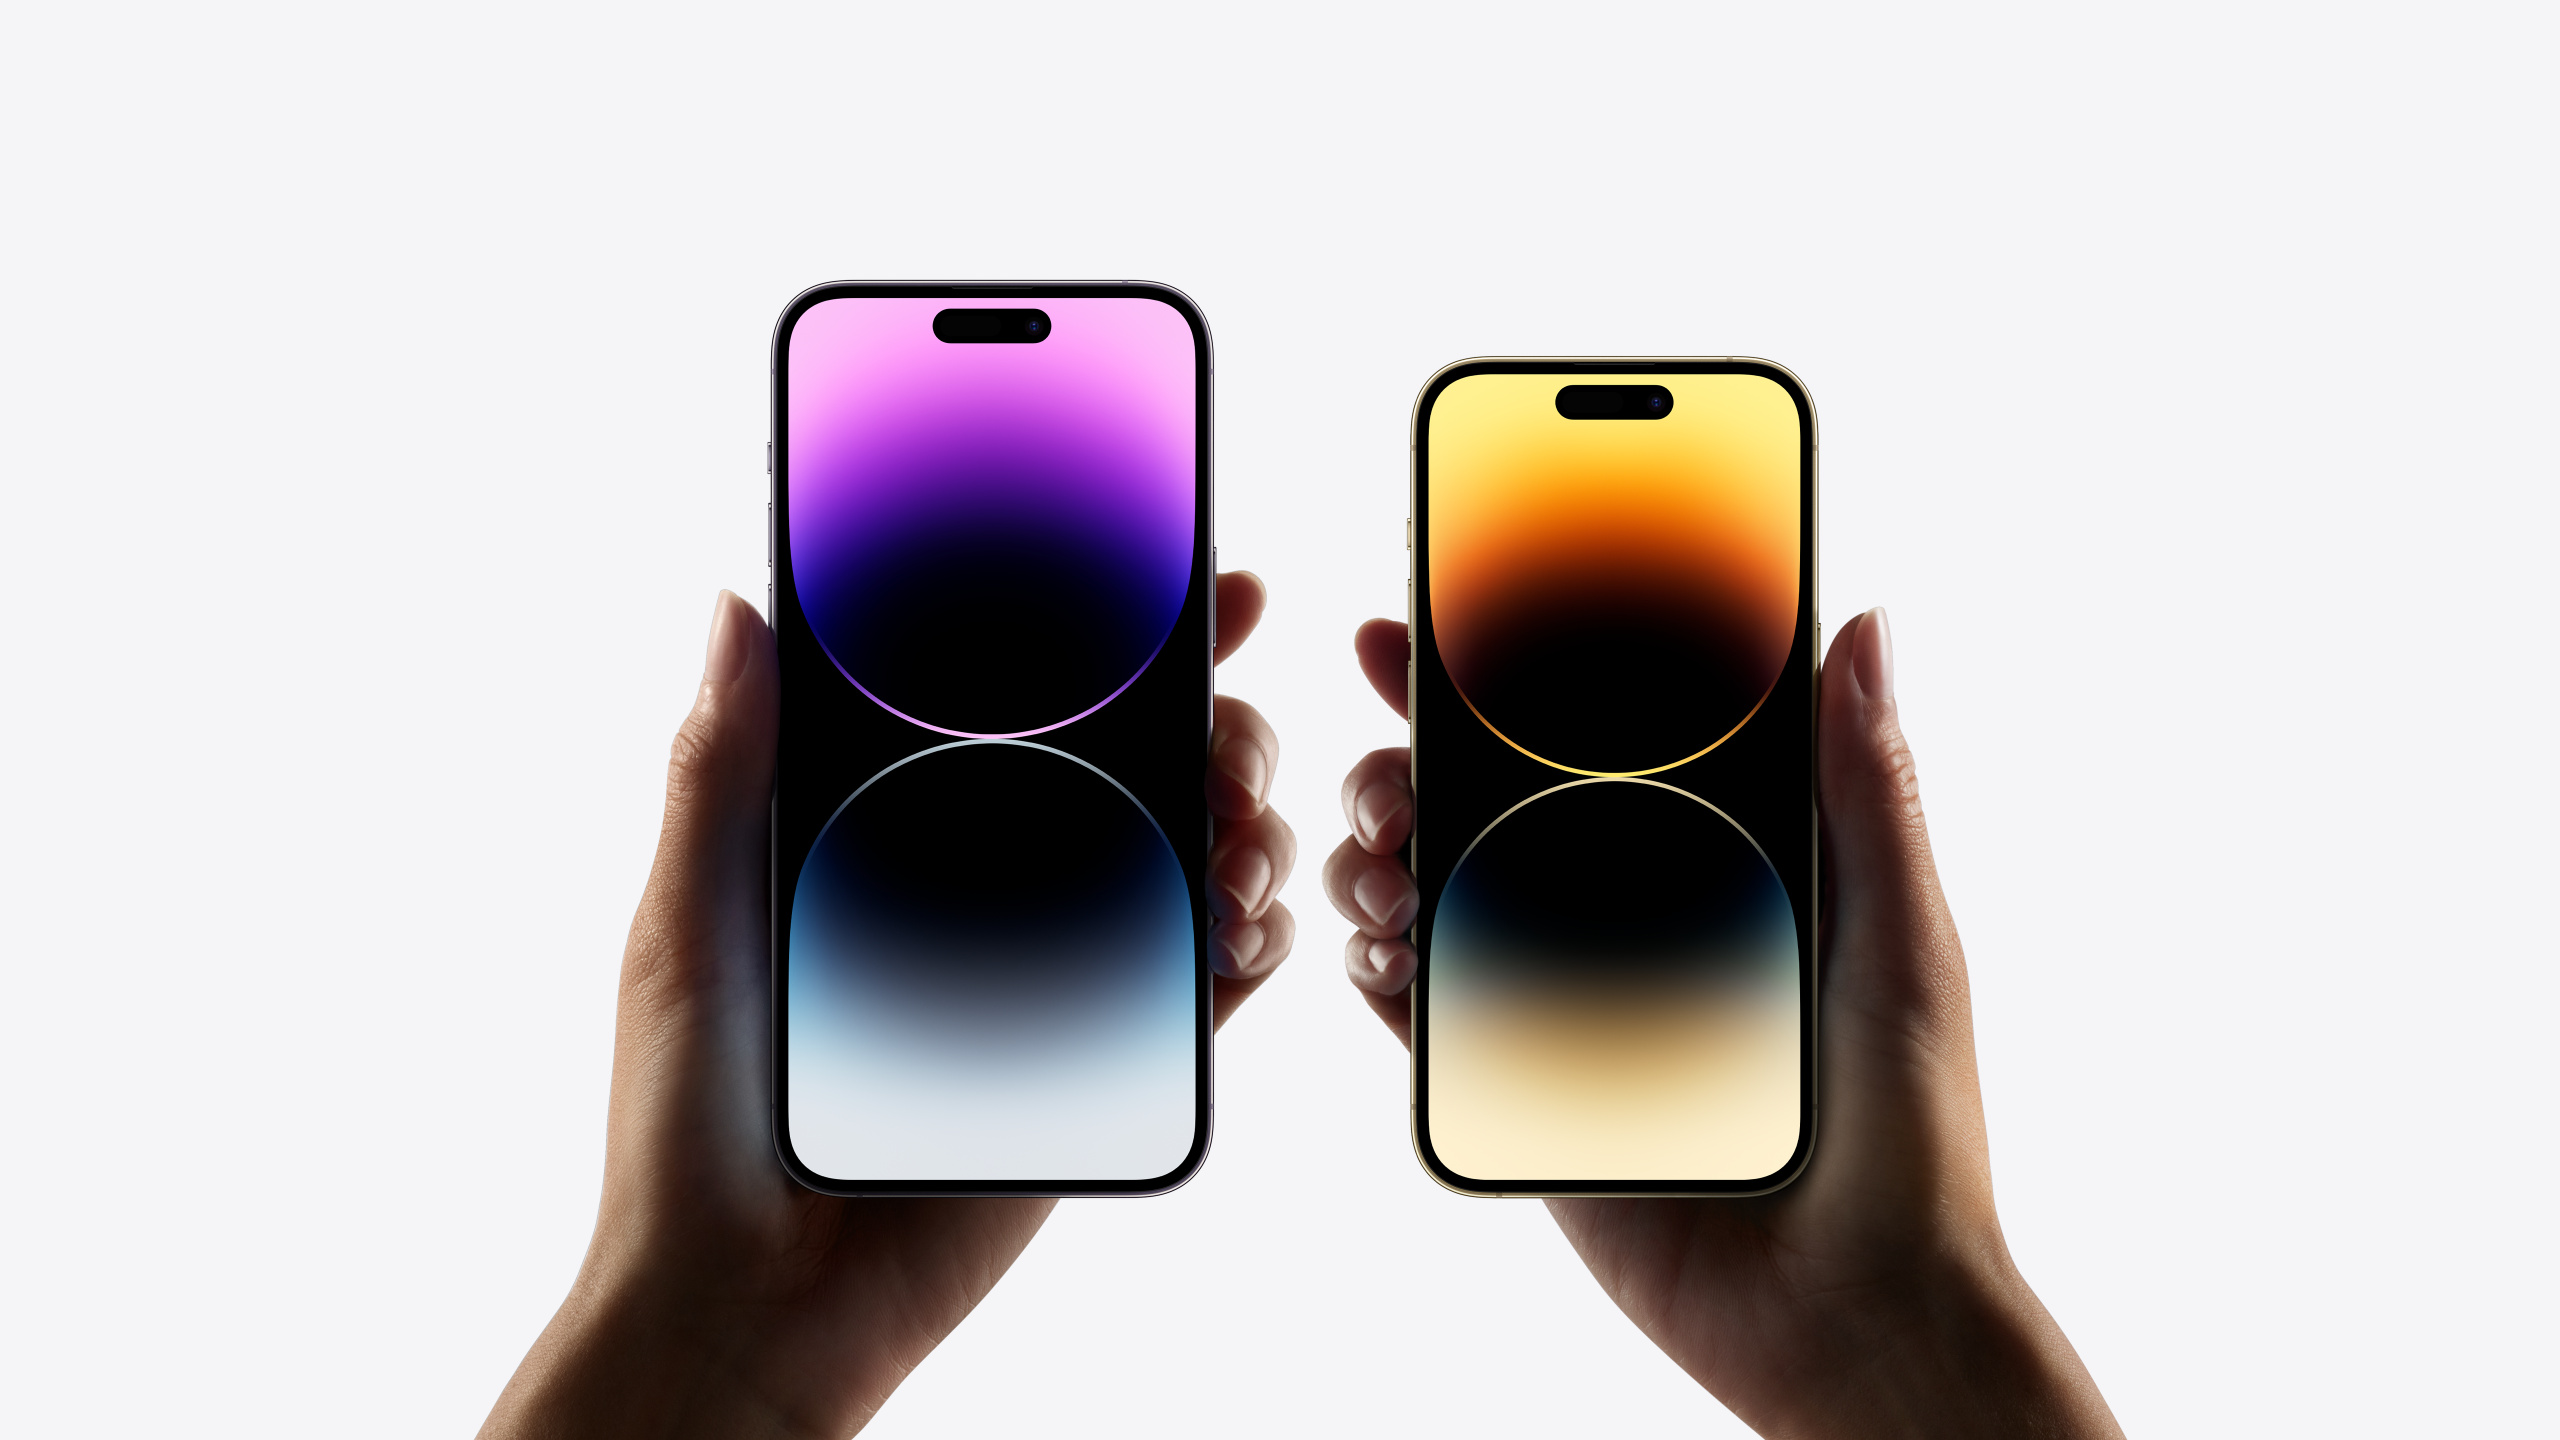 Eindelijk! De iPhone 14 en 14 Pro modellen zijn aangekondigd!